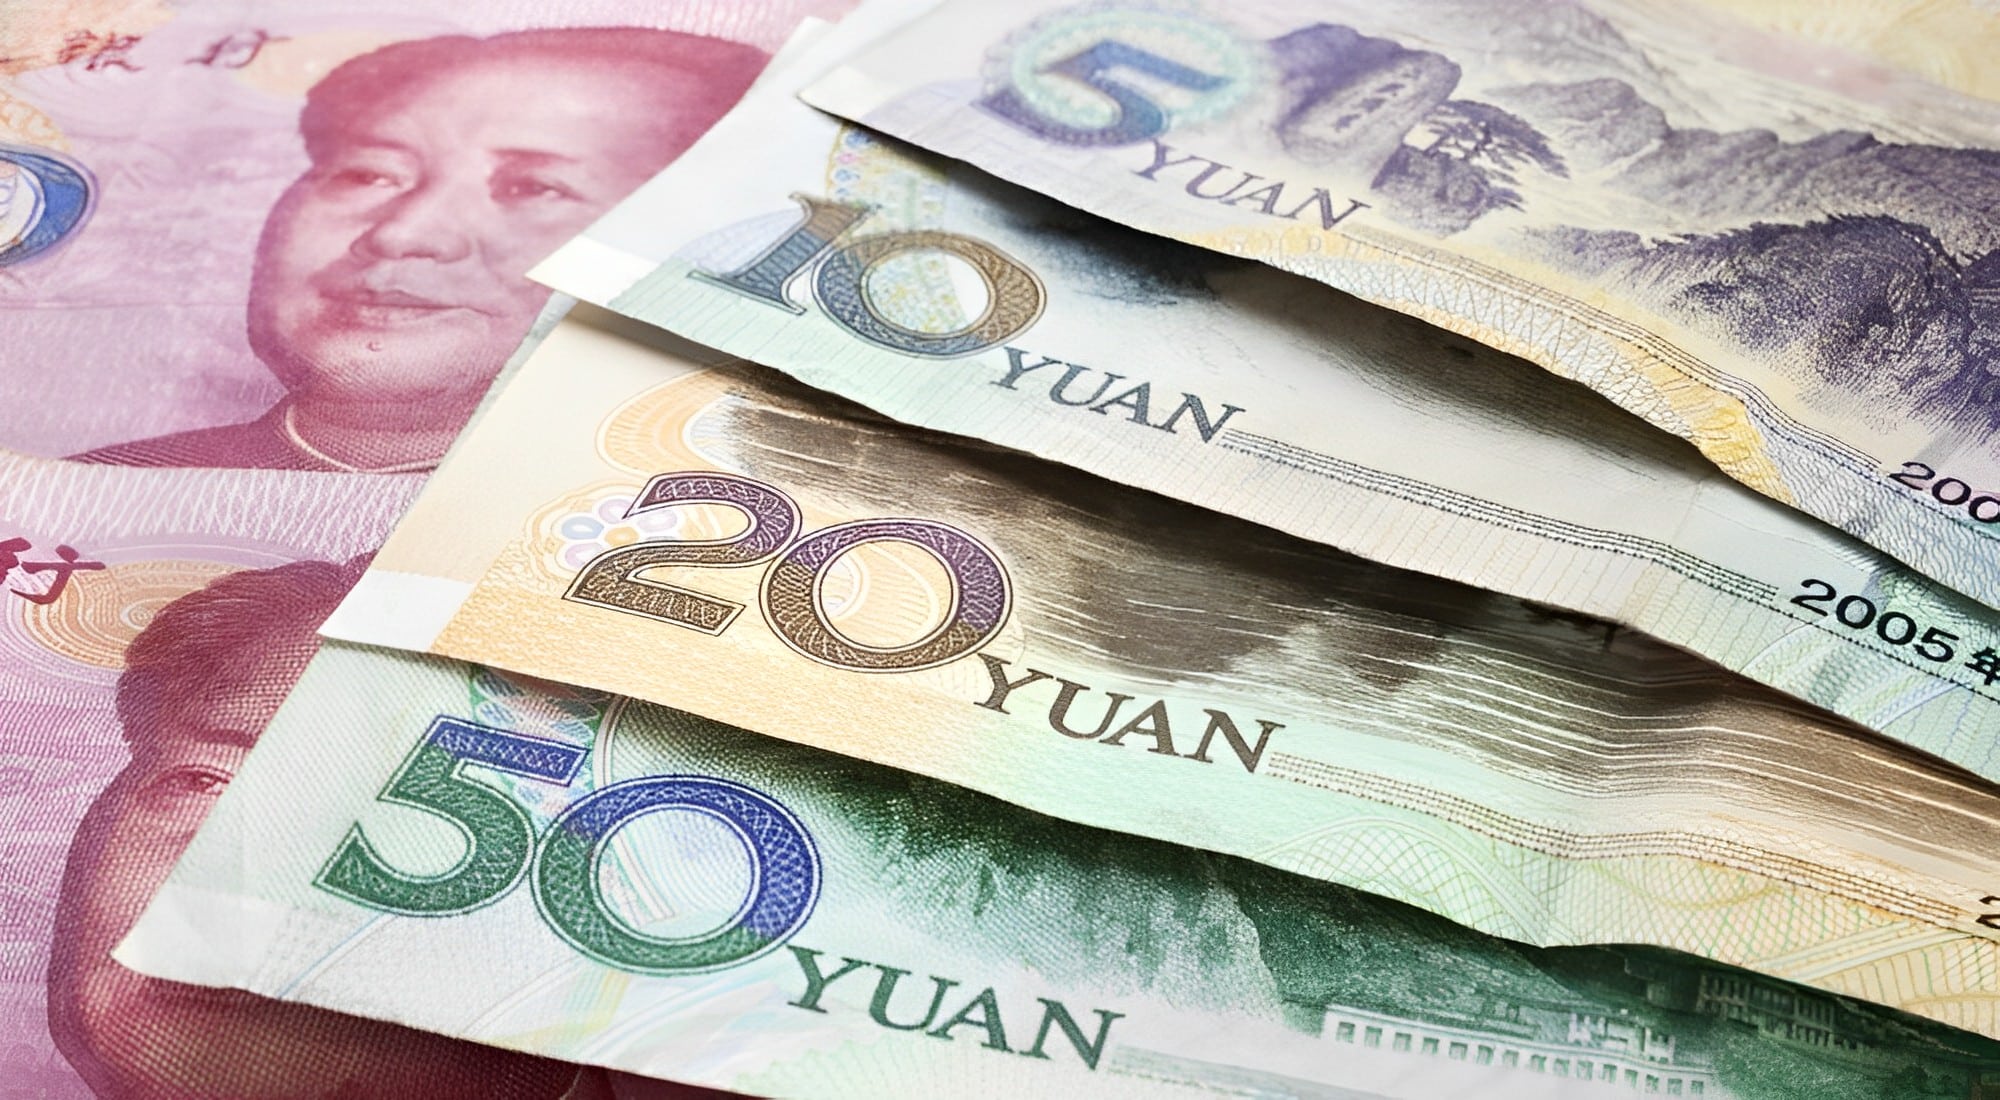 Để quá trình giao dịch diễn ra thuận lợi bạn nên đổi sang tiền Nhân dân tệ của Trung Quốc